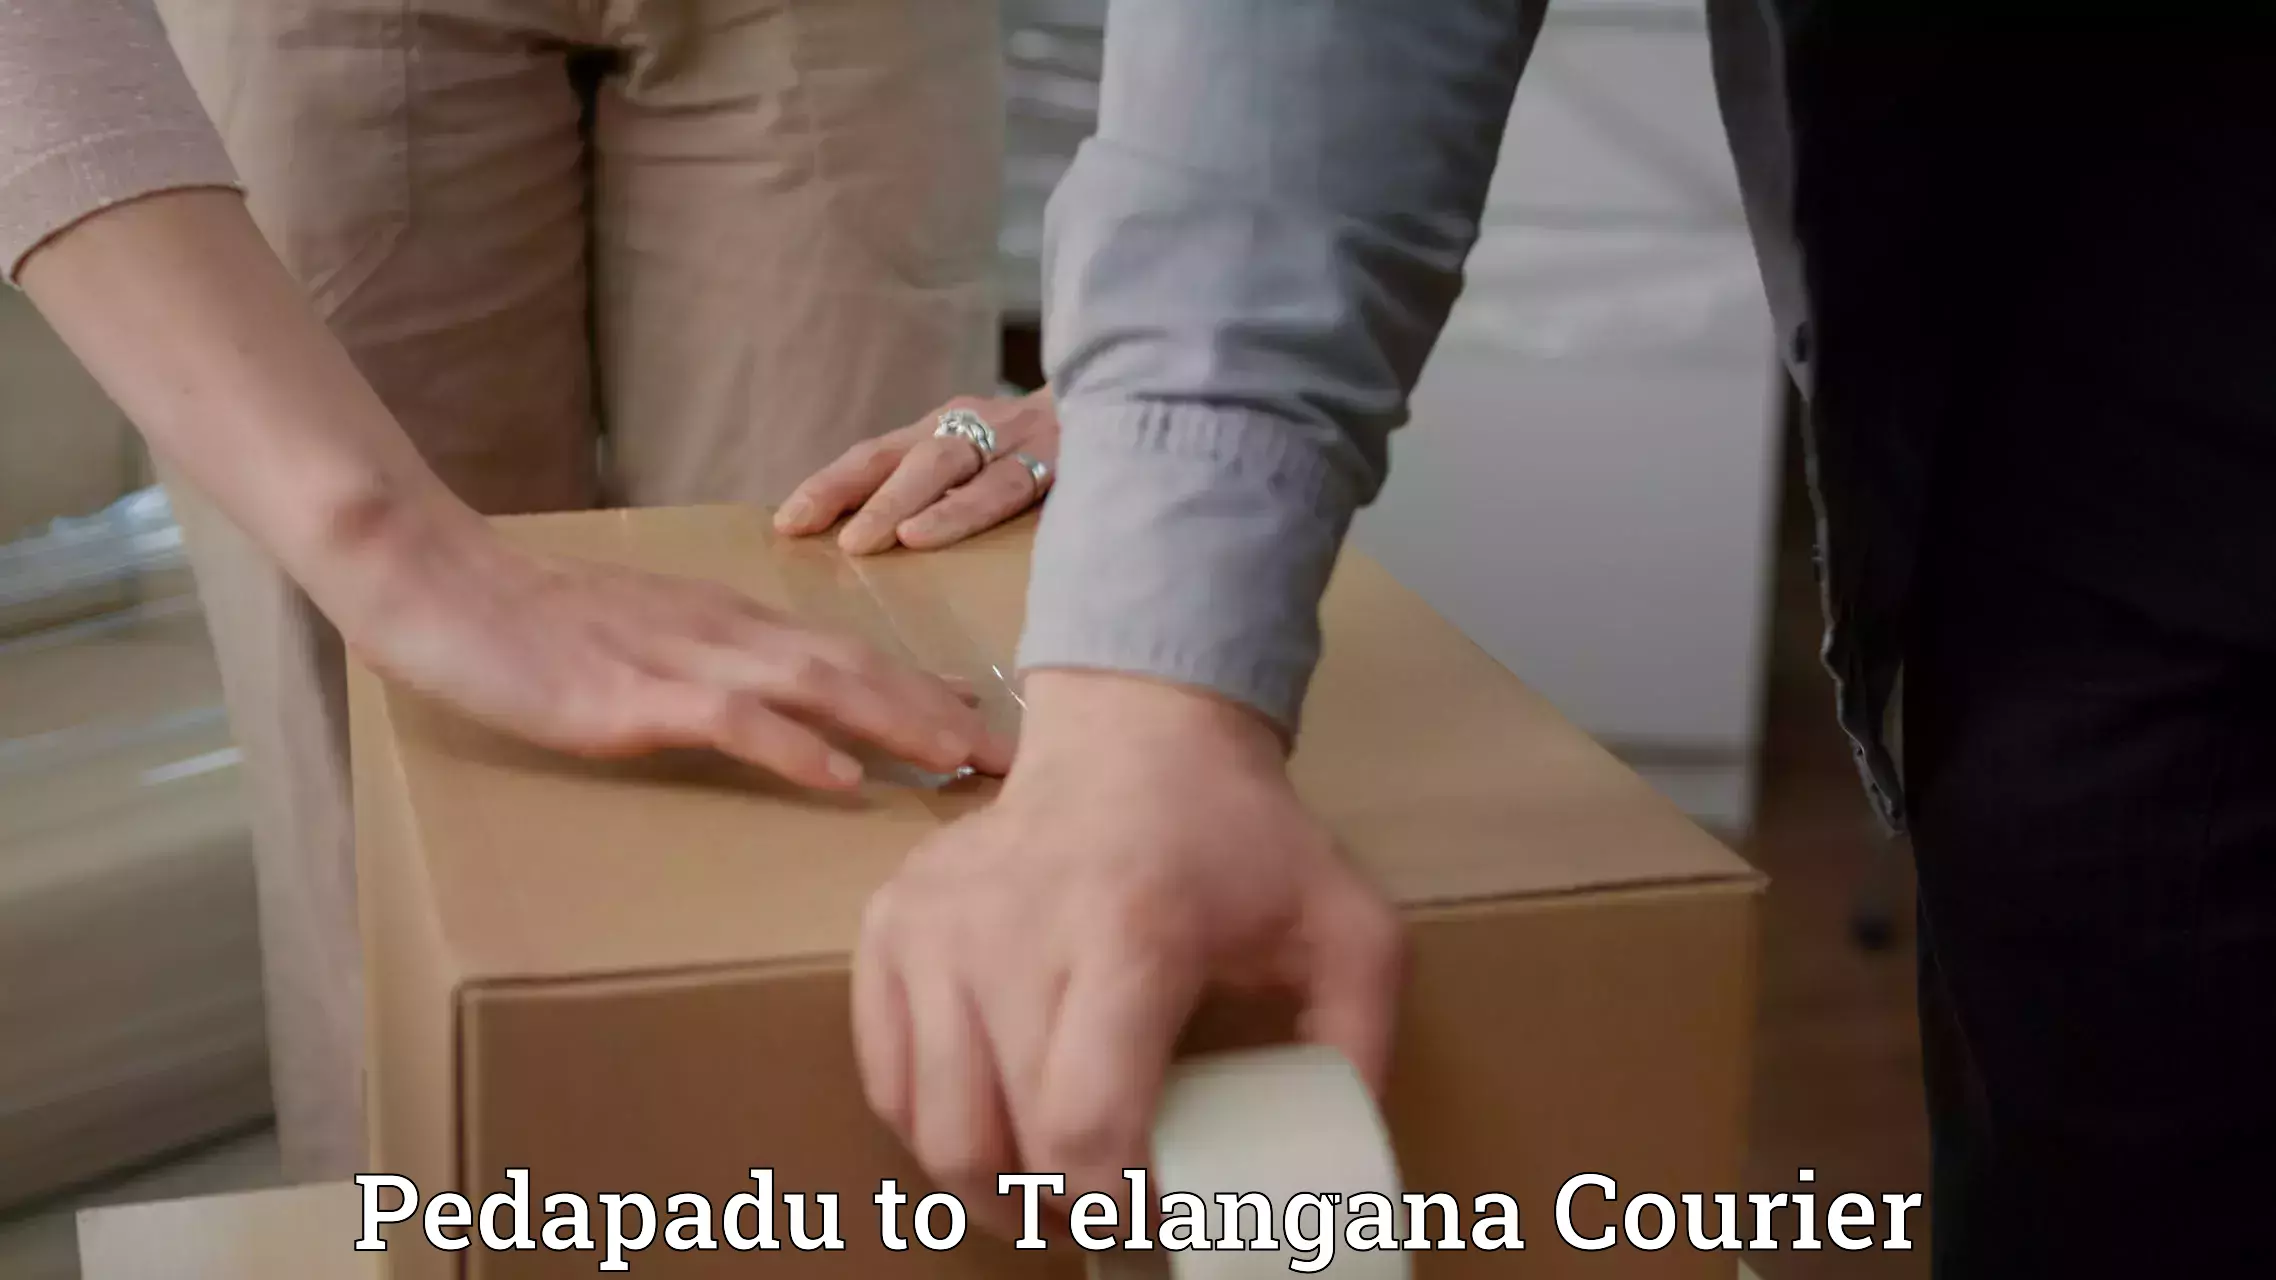 Express logistics service Pedapadu to Telangana